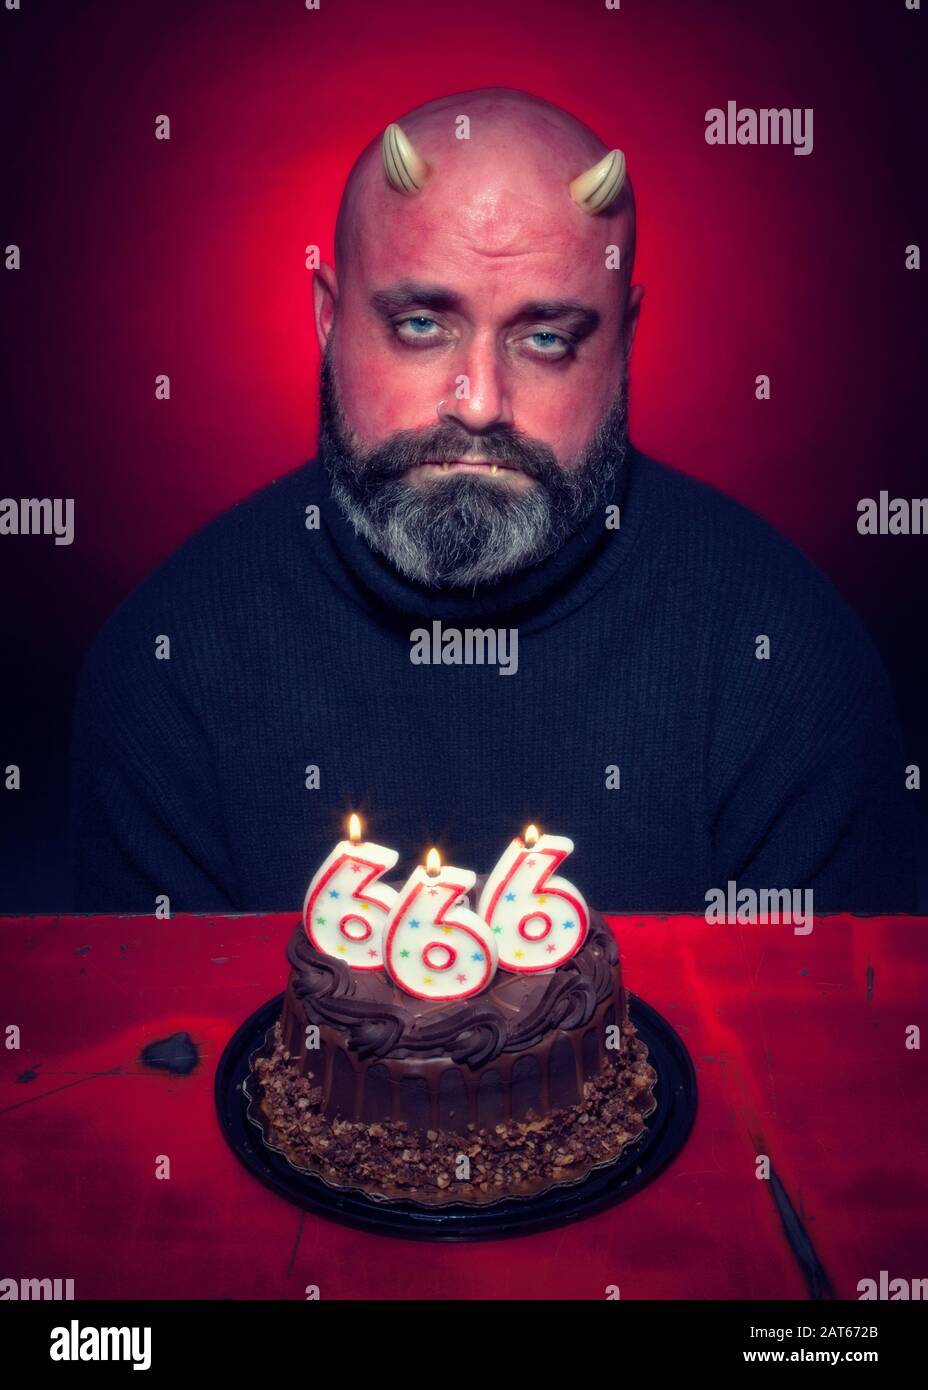 Un uomo triste siede davanti ad una torta di compleanno del cioccolato del diavolo con il numero 666 candele con uno sfondo rosso acceso Foto Stock